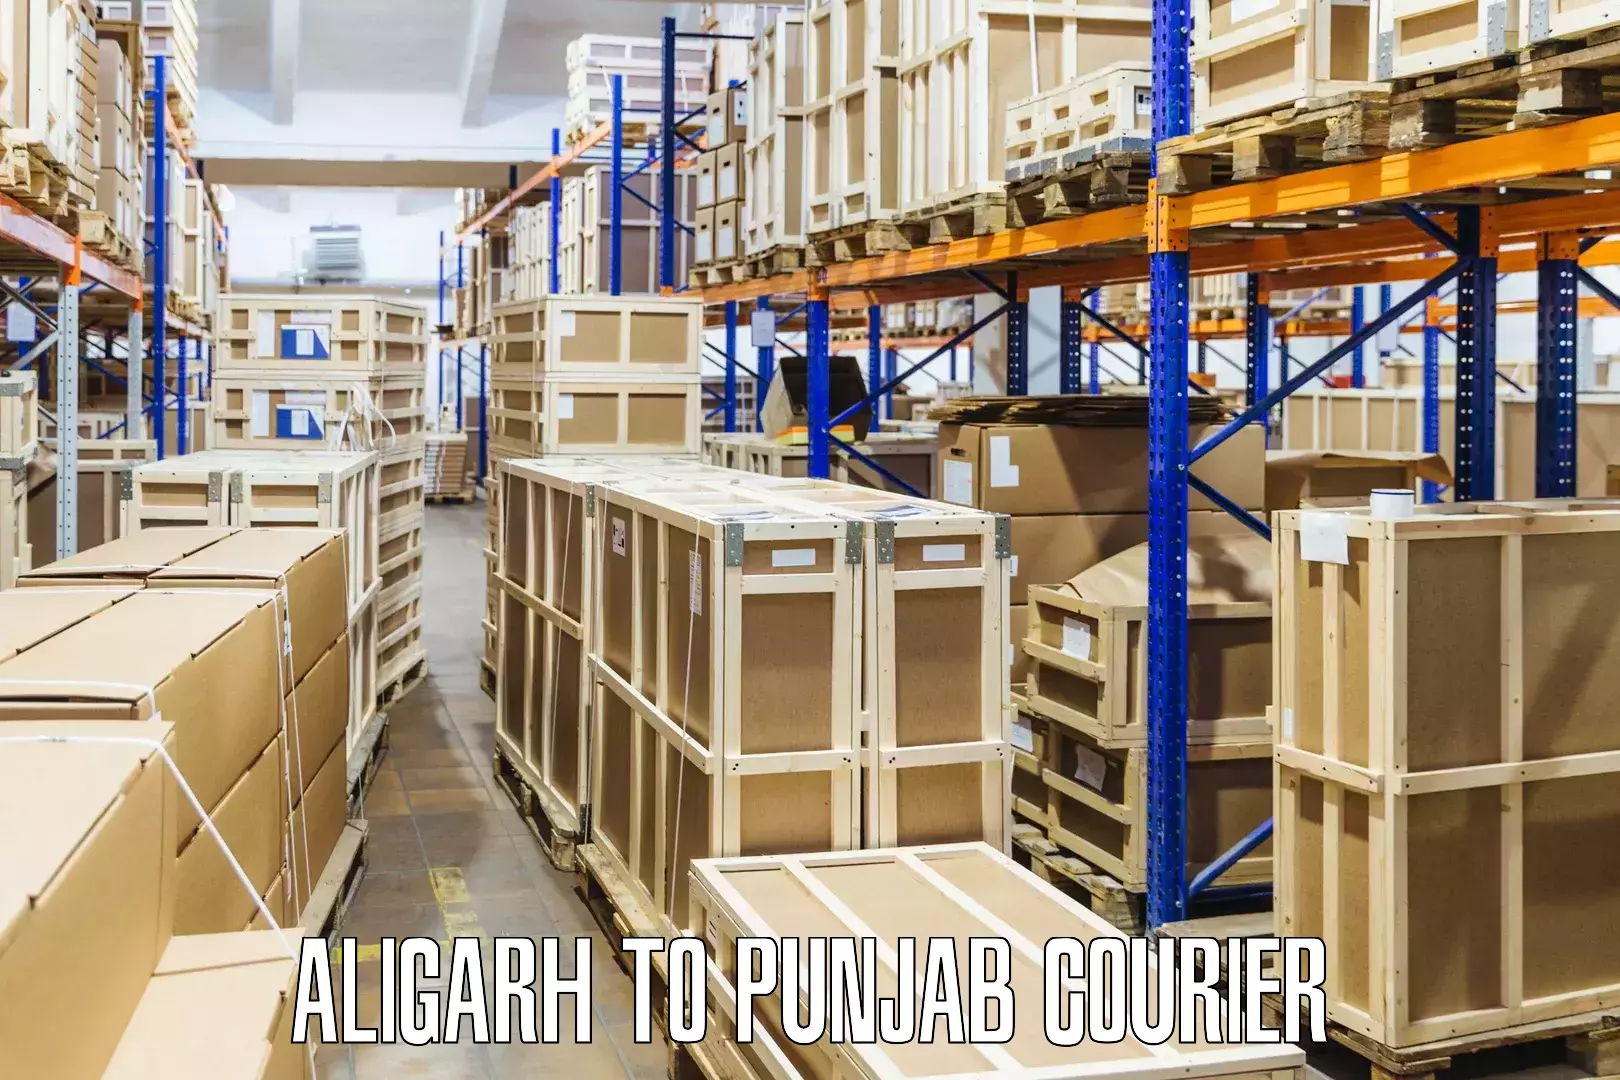 Courier service comparison Aligarh to Sultanpur Lodhi